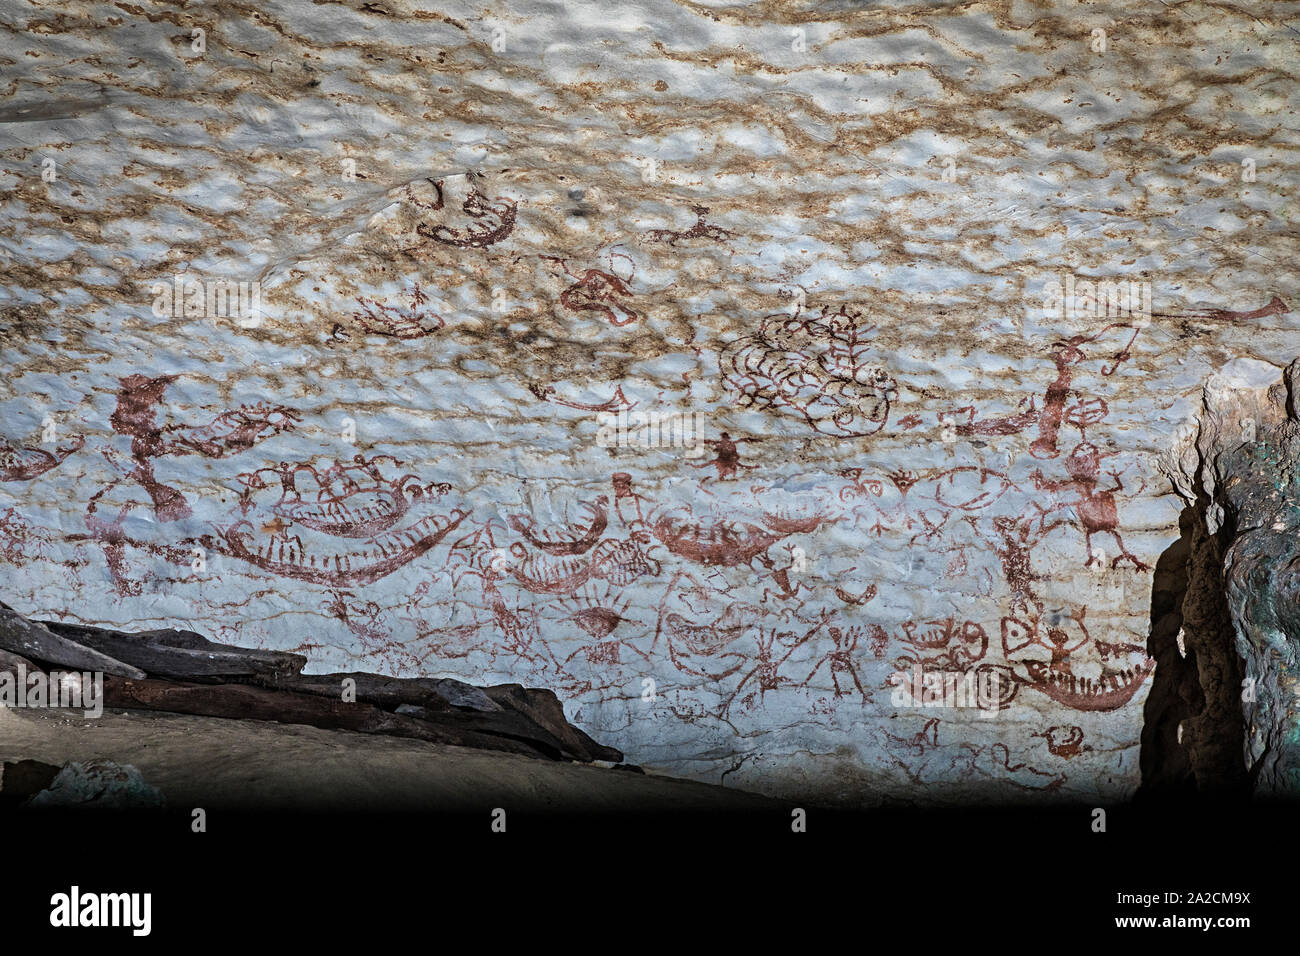 El arte prehistórico en la Cueva Pintada en la cueva de Niah, Malasia, hasta 40.000 años de antigüedad Foto de stock